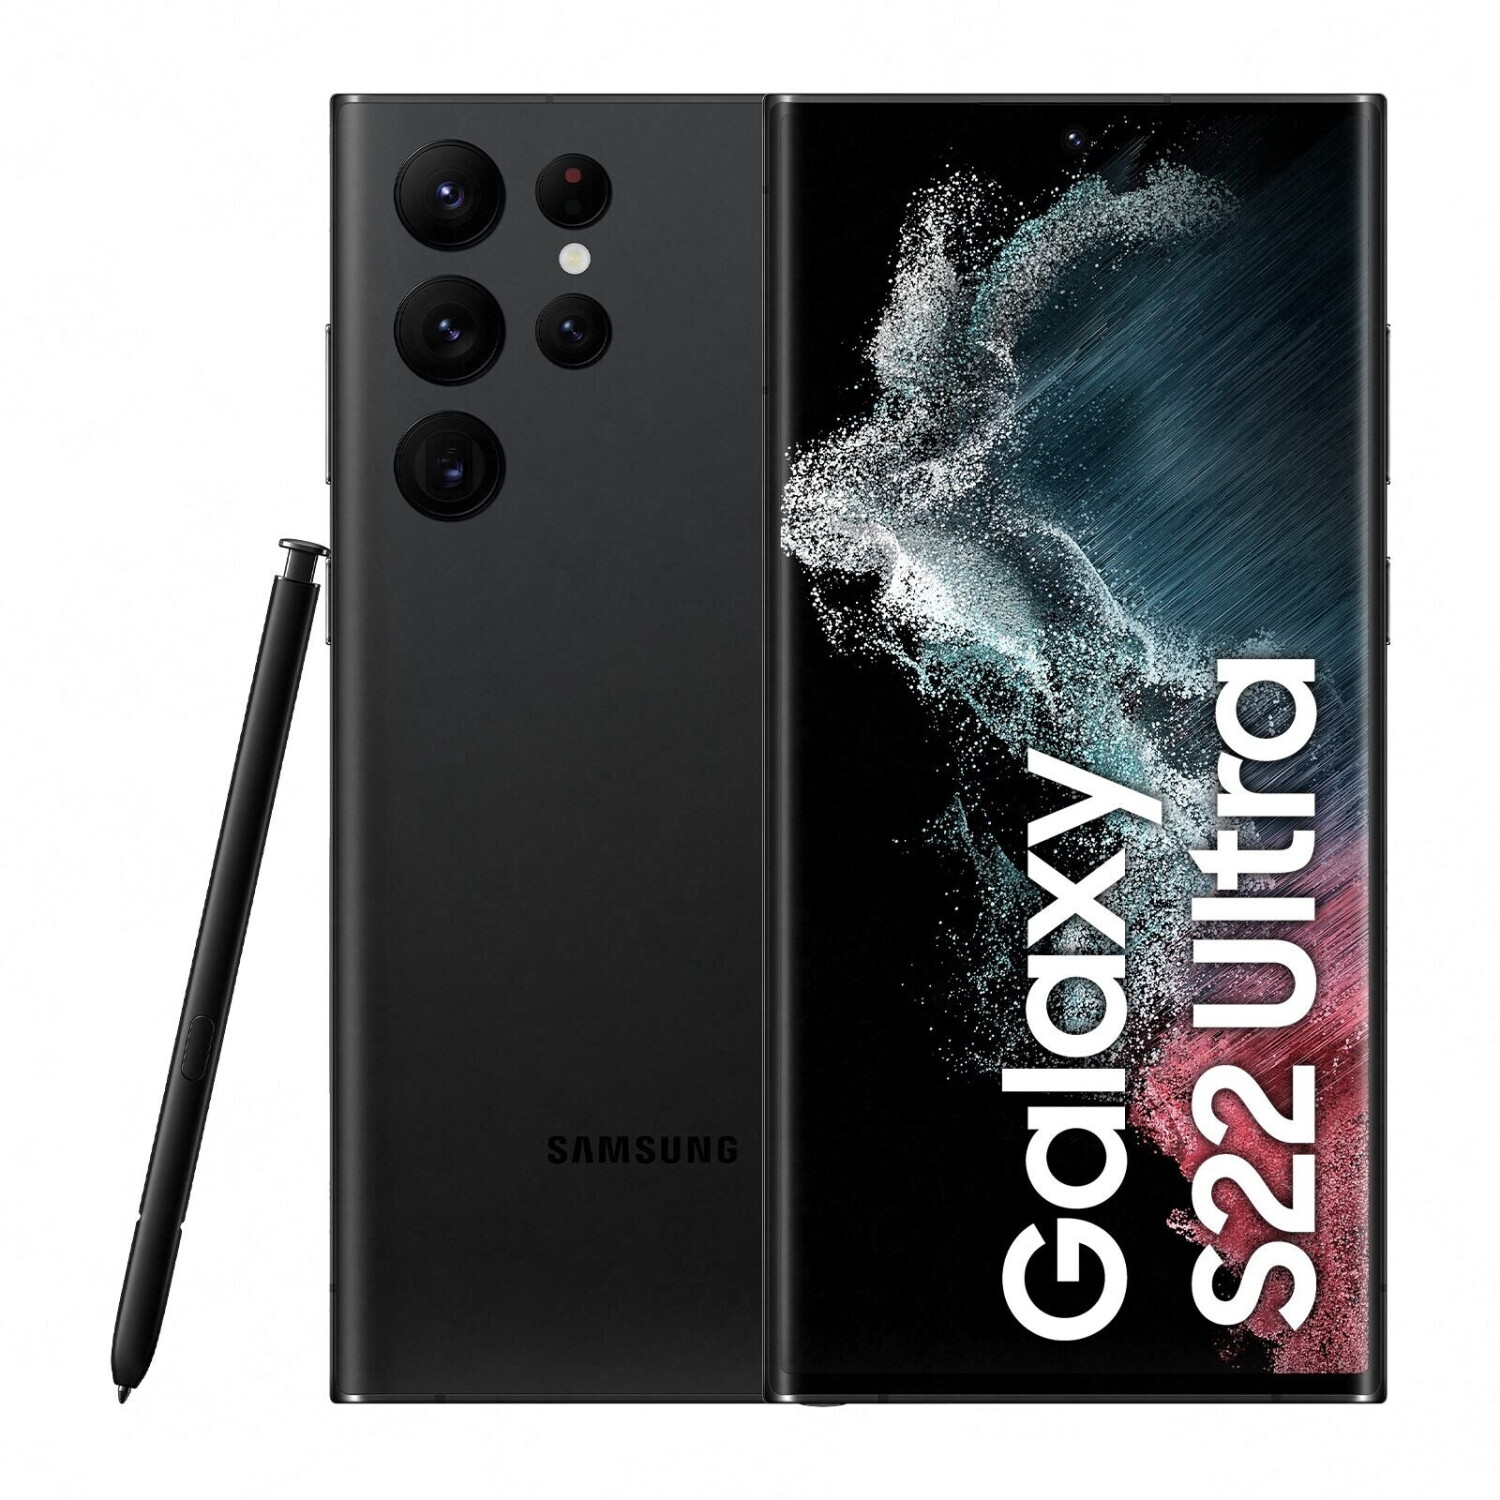 La cámara del Samsung Galaxy S21 Ultra 5G con Exynos queda en la posición  17 del ranking de DxOMark